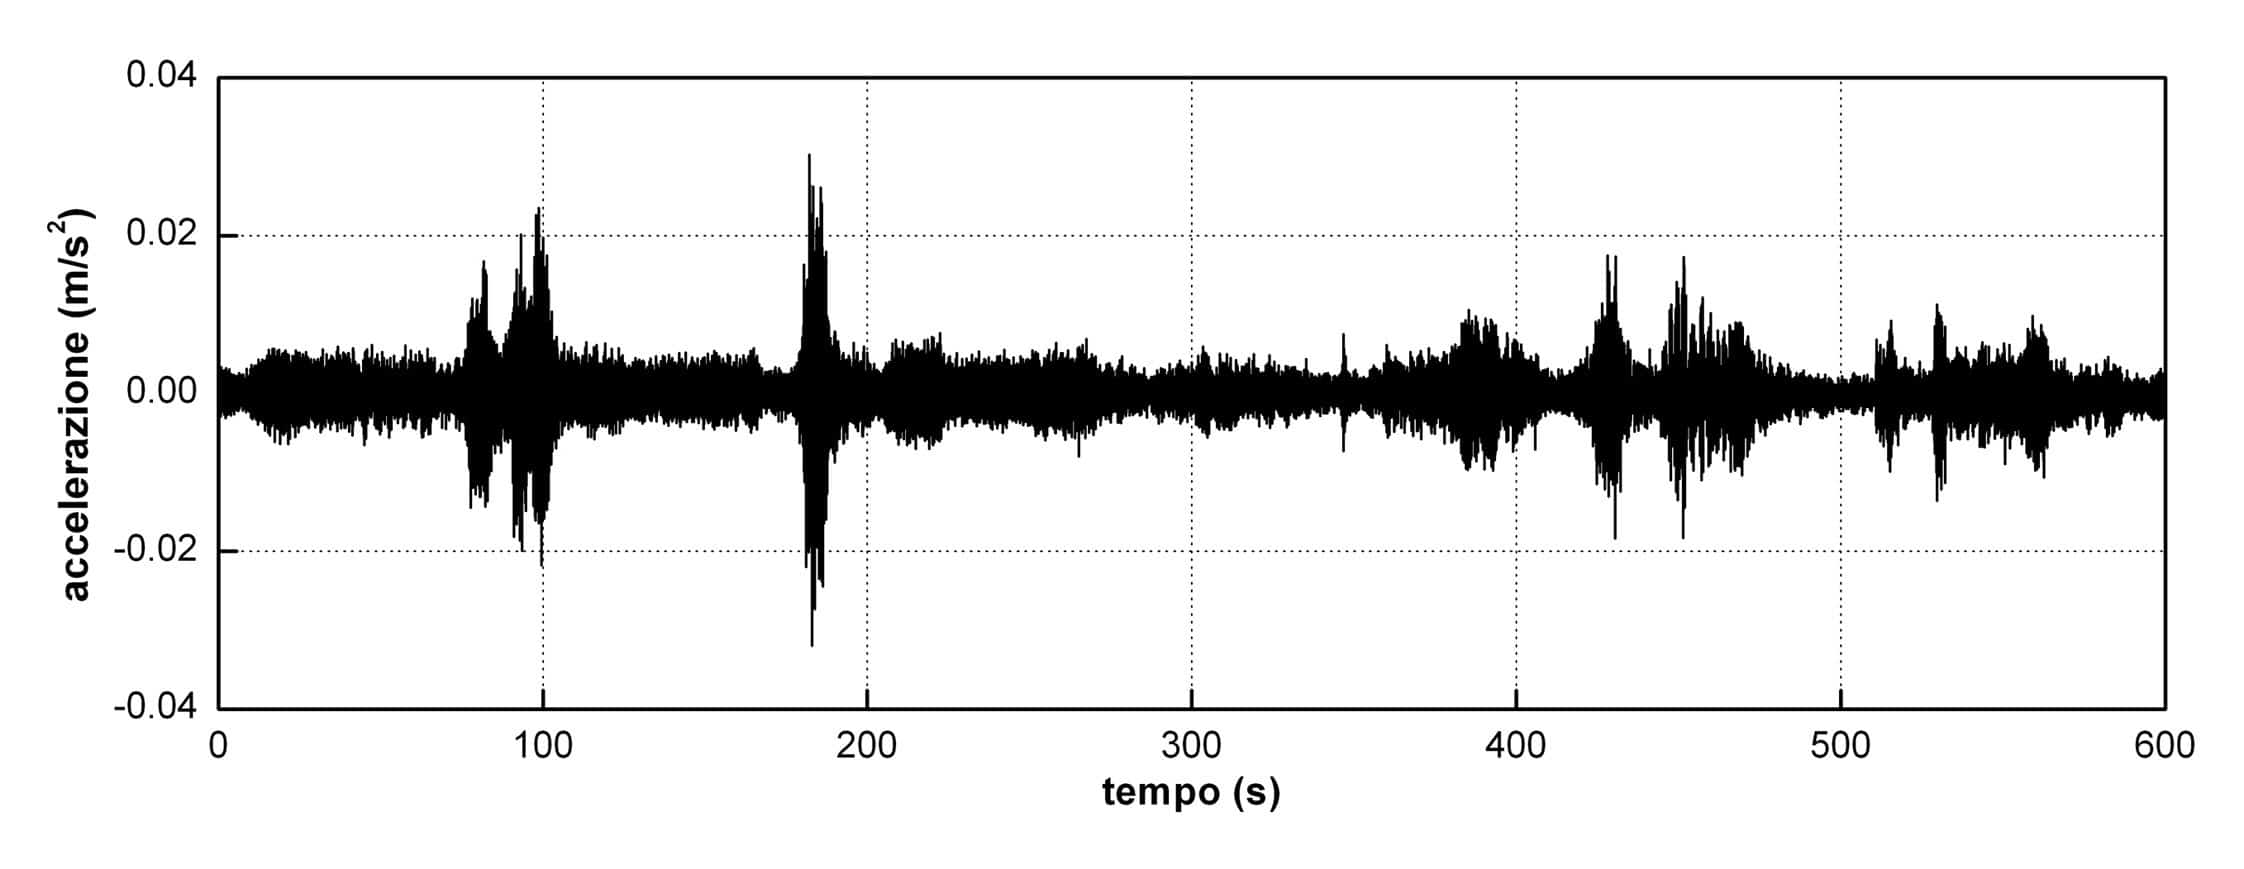 Tipiche accelerazioni registrate sull’impalcato del viadotto VI004 P16-P19 per effetto di micro-tremori